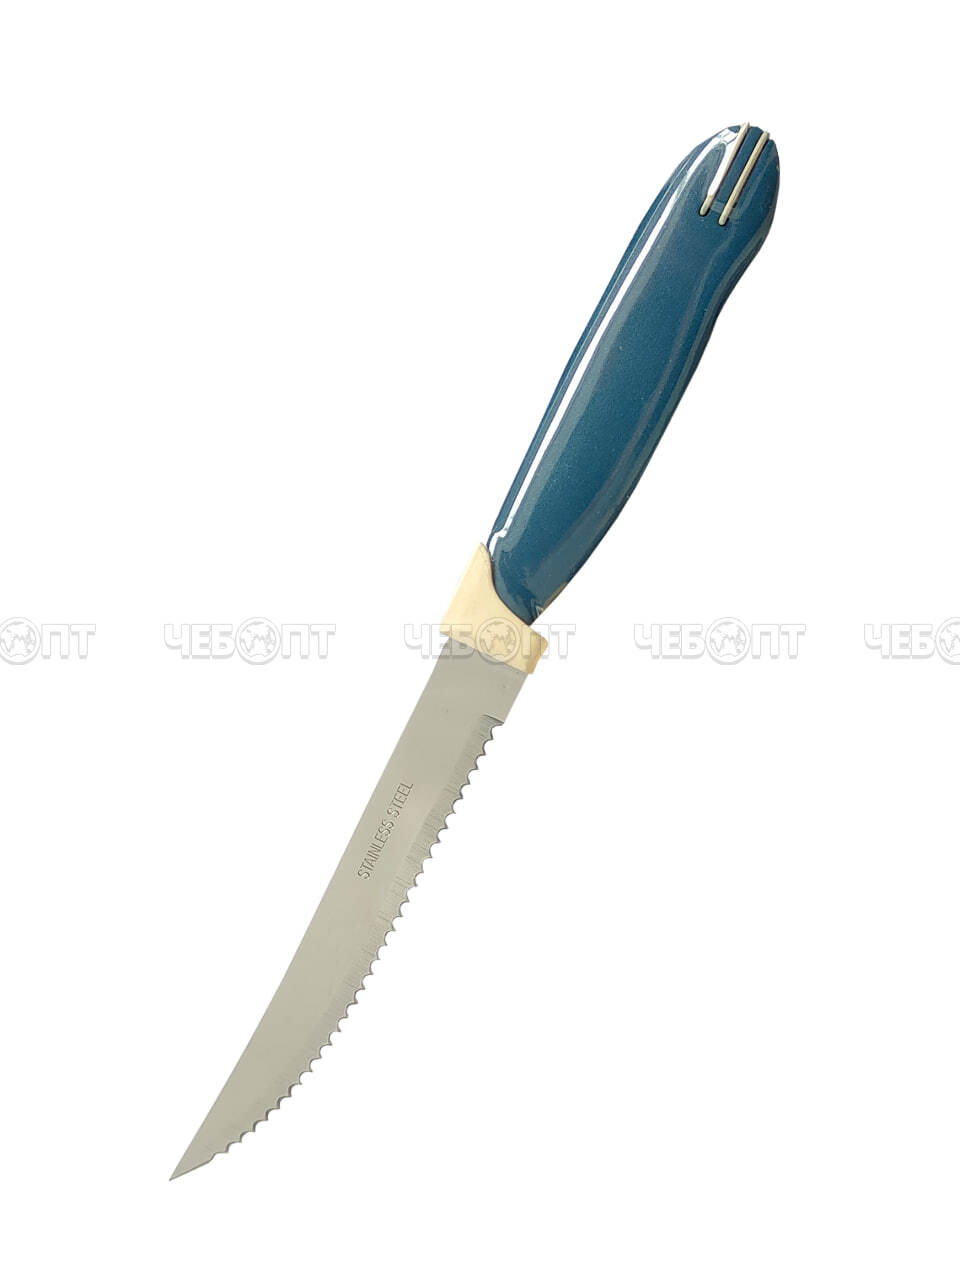 Нож кухонный для овощей 220 мм YL-1 из нержавеющей стали с пластиковой ручкой, с широким лезвием, с зубчиками арт. 26011 $ [12/1200] GOODSEE. ЧЕБОПТ.